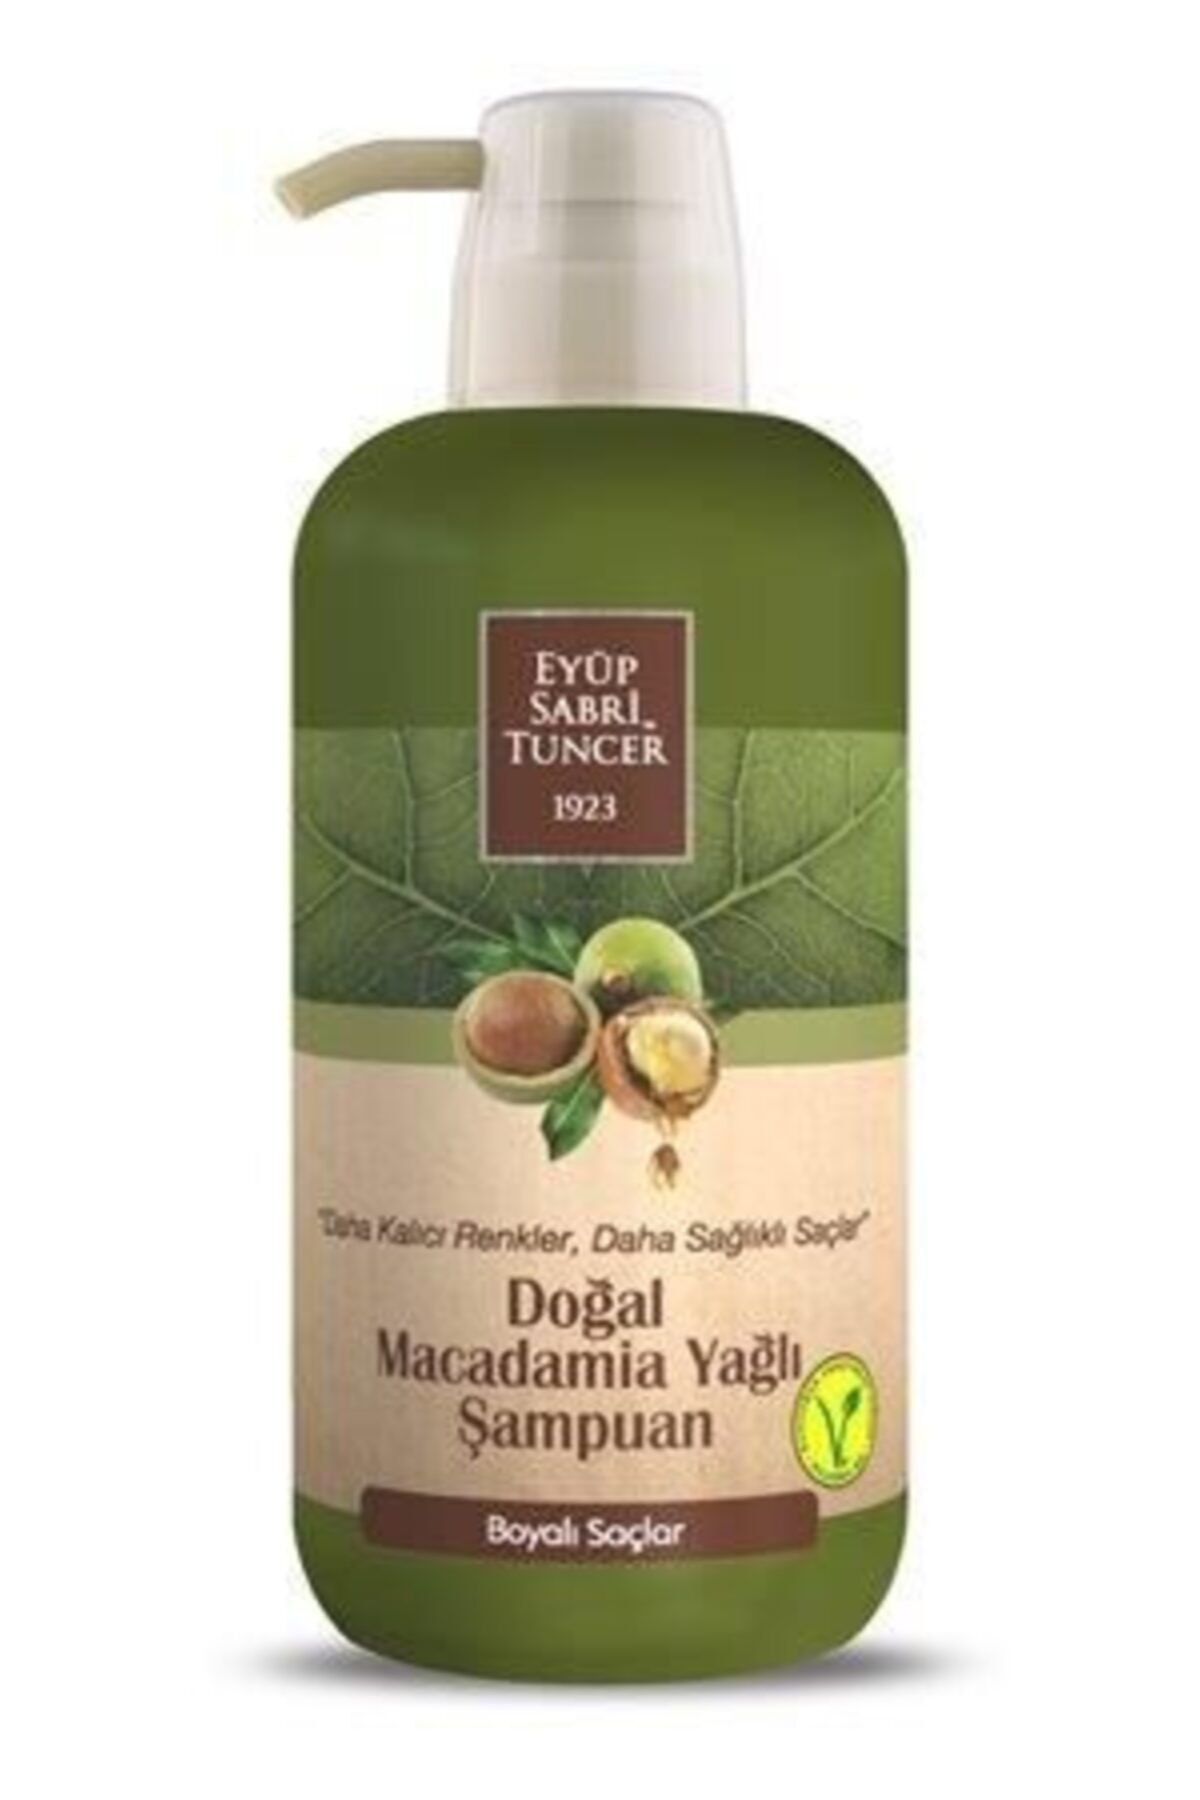 Eyüp Sabri Tuncer Doğal Macadamia Yağlı Şampuan 600ml